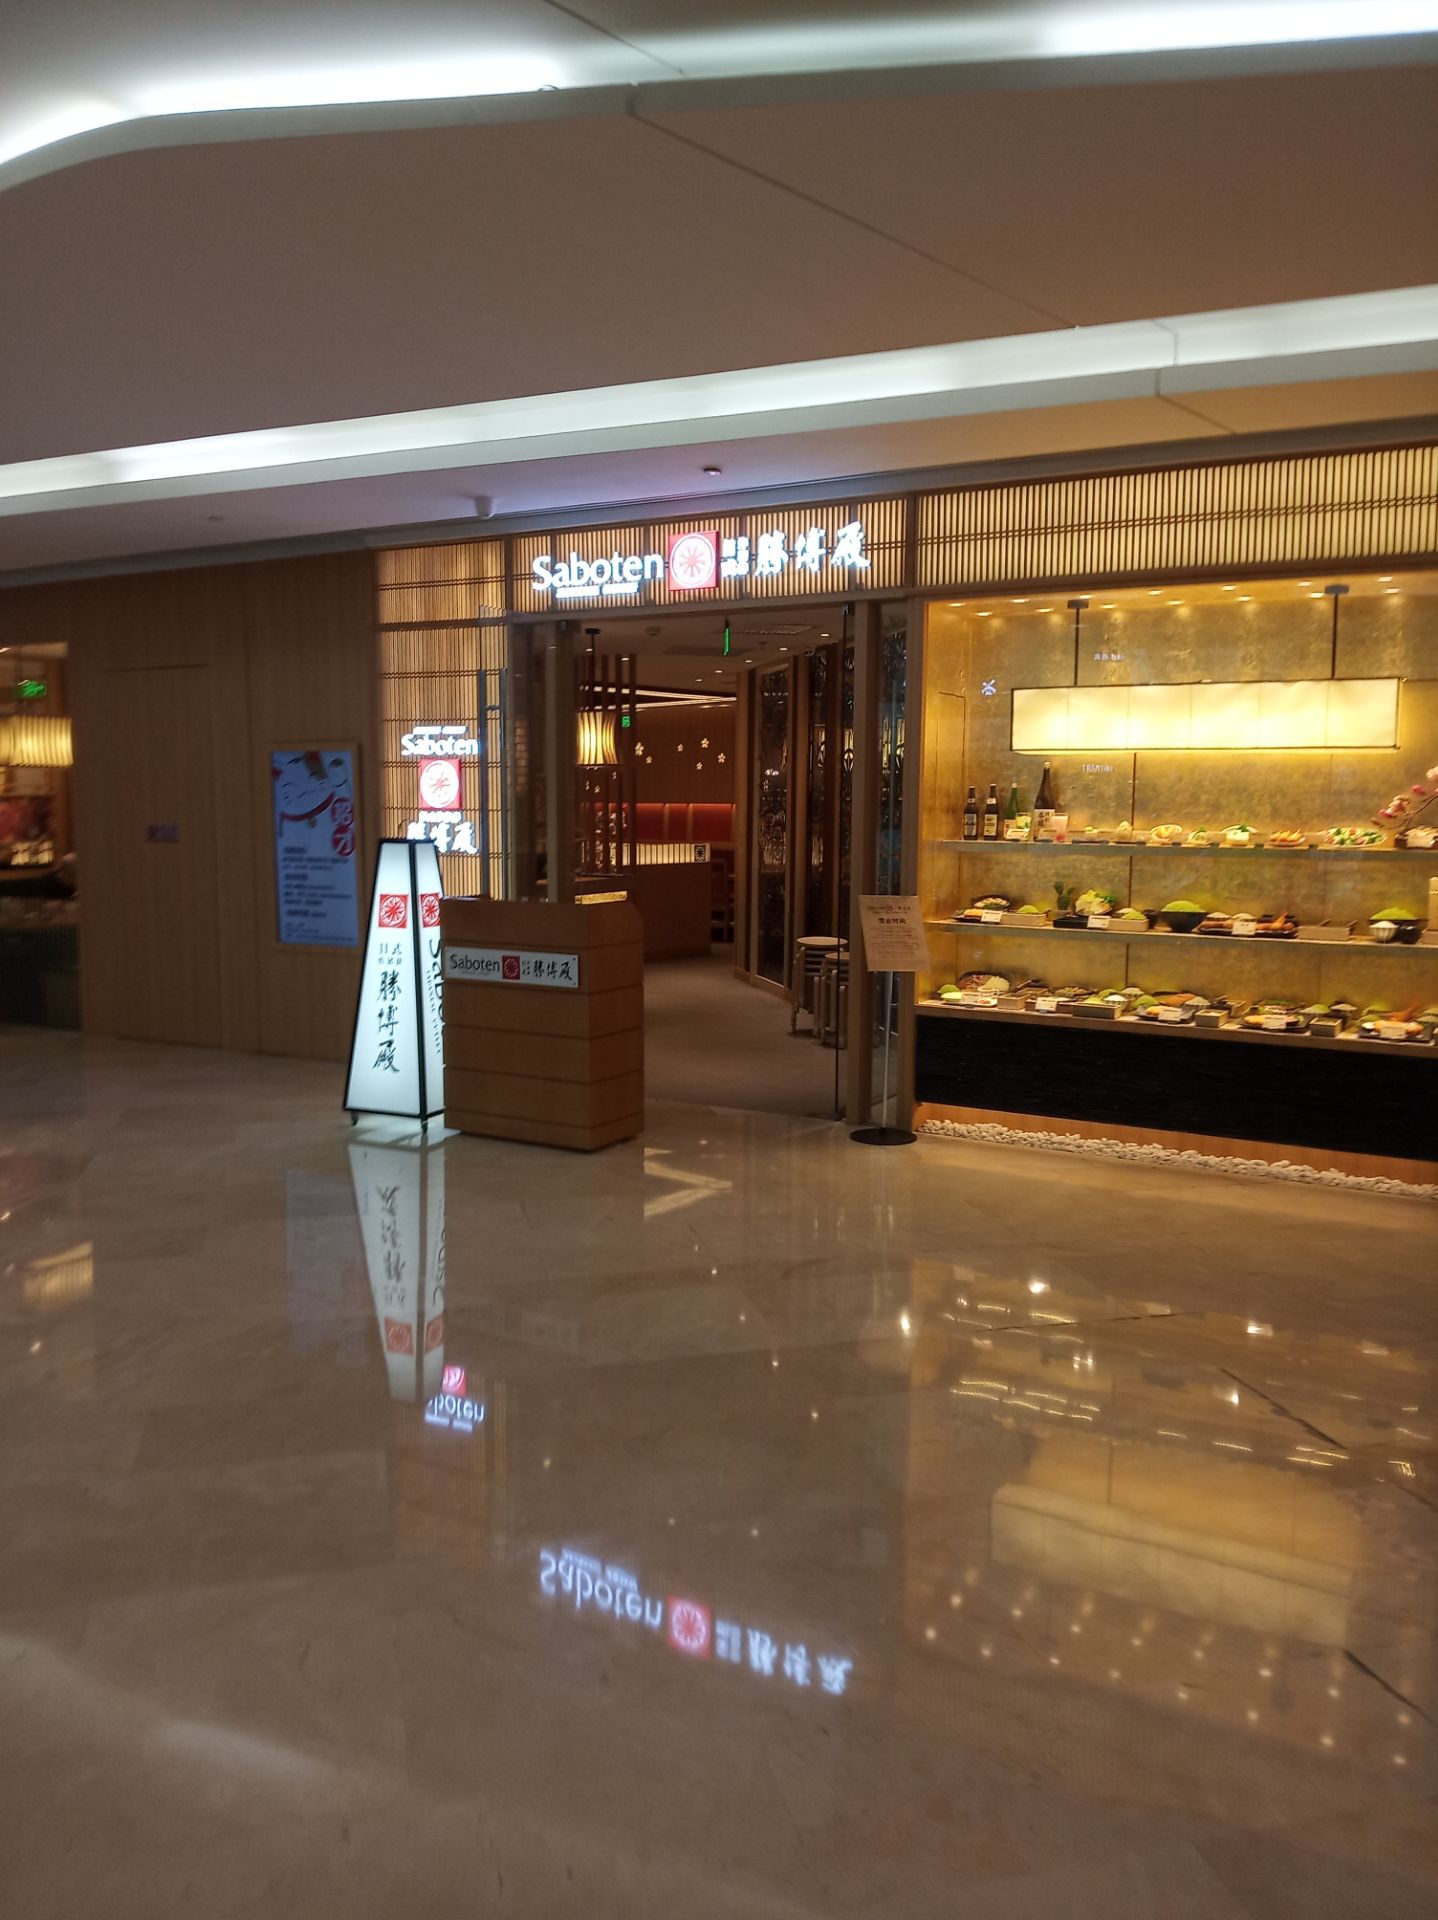 【携程攻略】北京悠唐购物中心购物,在朝阳门这里,下了地铁走过去要十